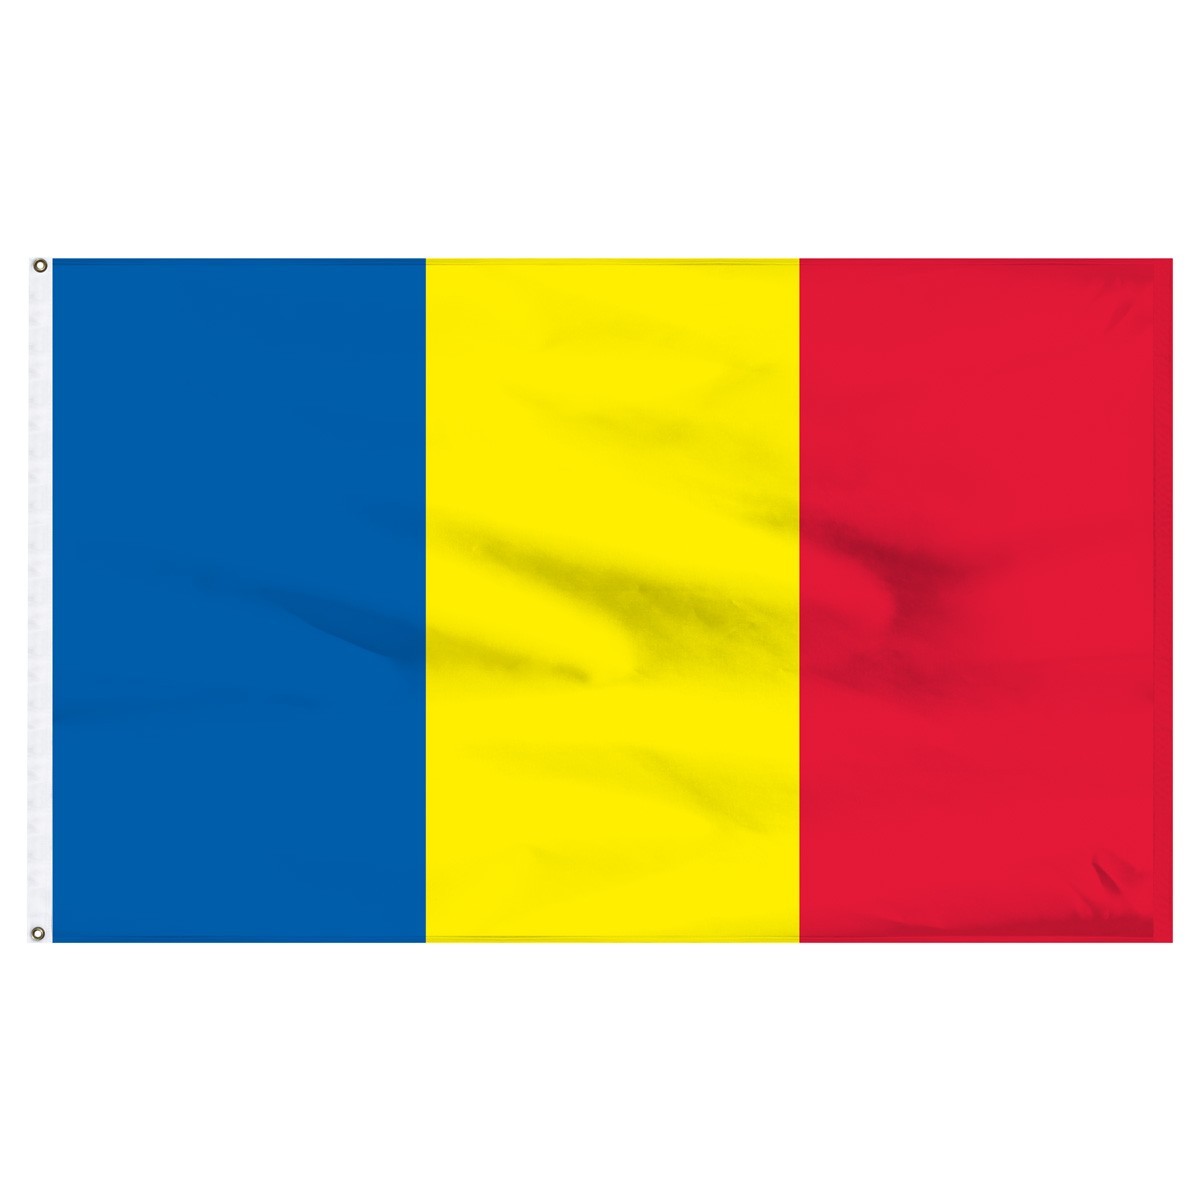 Romania 3' x 5' Outdoor Nylon Flag